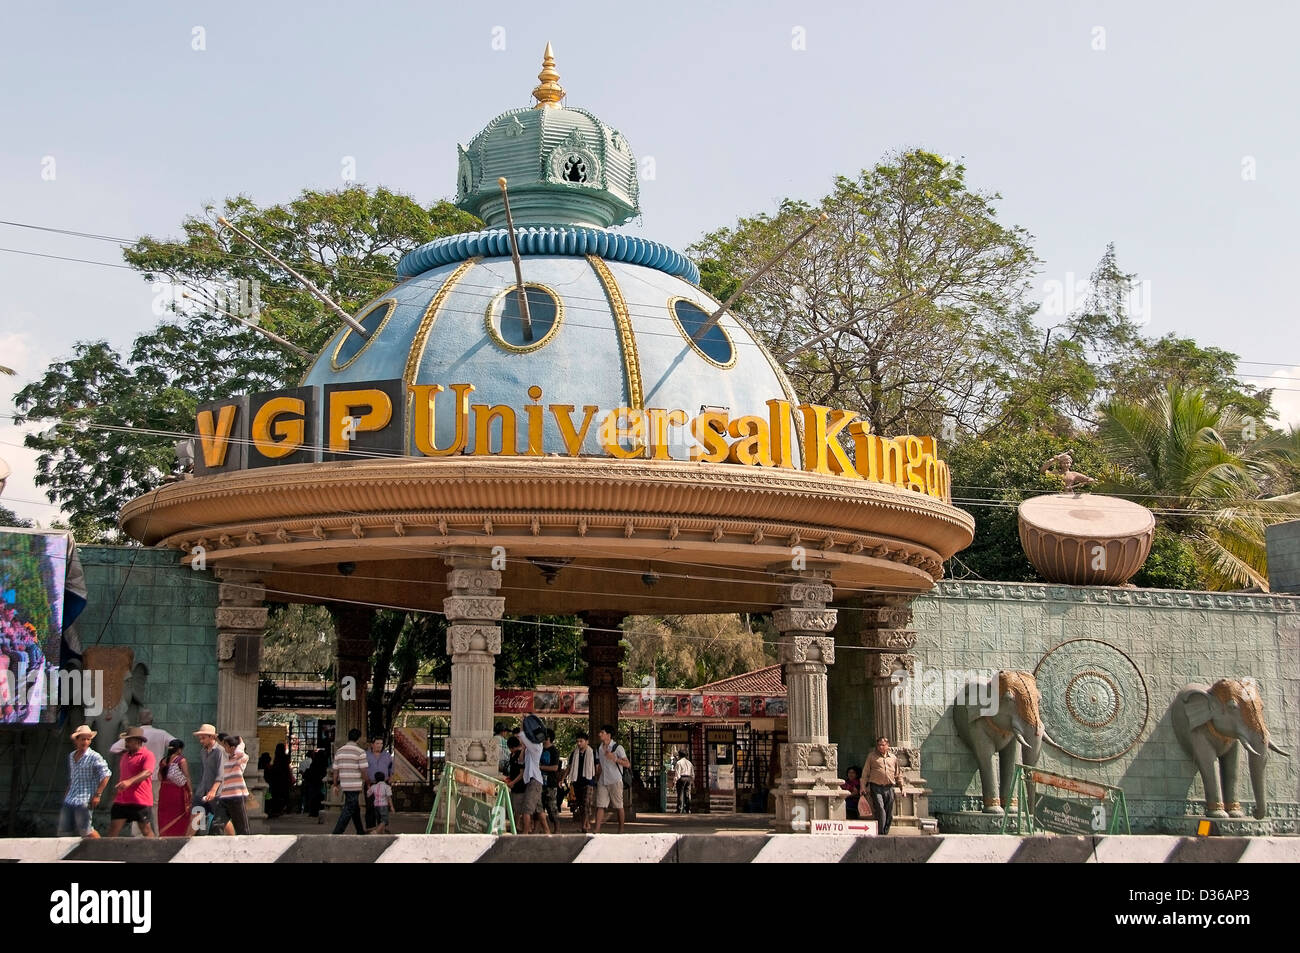 VGP Royaume universel Le meilleur parc à thème, parc de loisirs, parc aquatique à Chennai (Madras) en Inde Tamil Nadu Banque D'Images